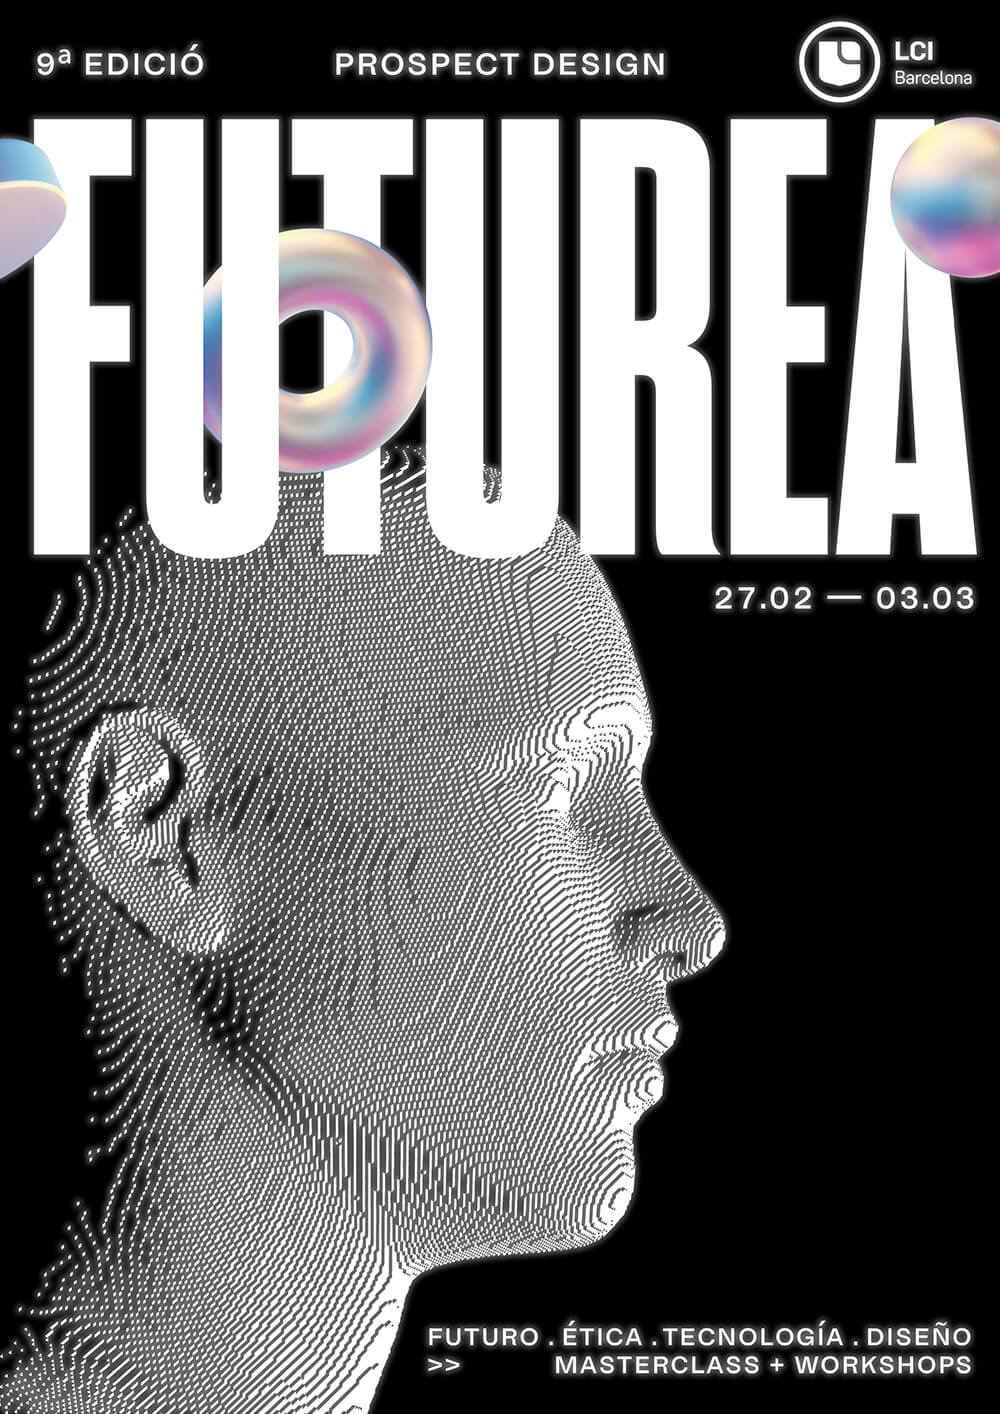 Un pòster impactant per a la 9a edició de FUTUREA, que presenta una imatge hologràfica de perfil amb dates i temes de futur, ètica, tecnologia i disseny.